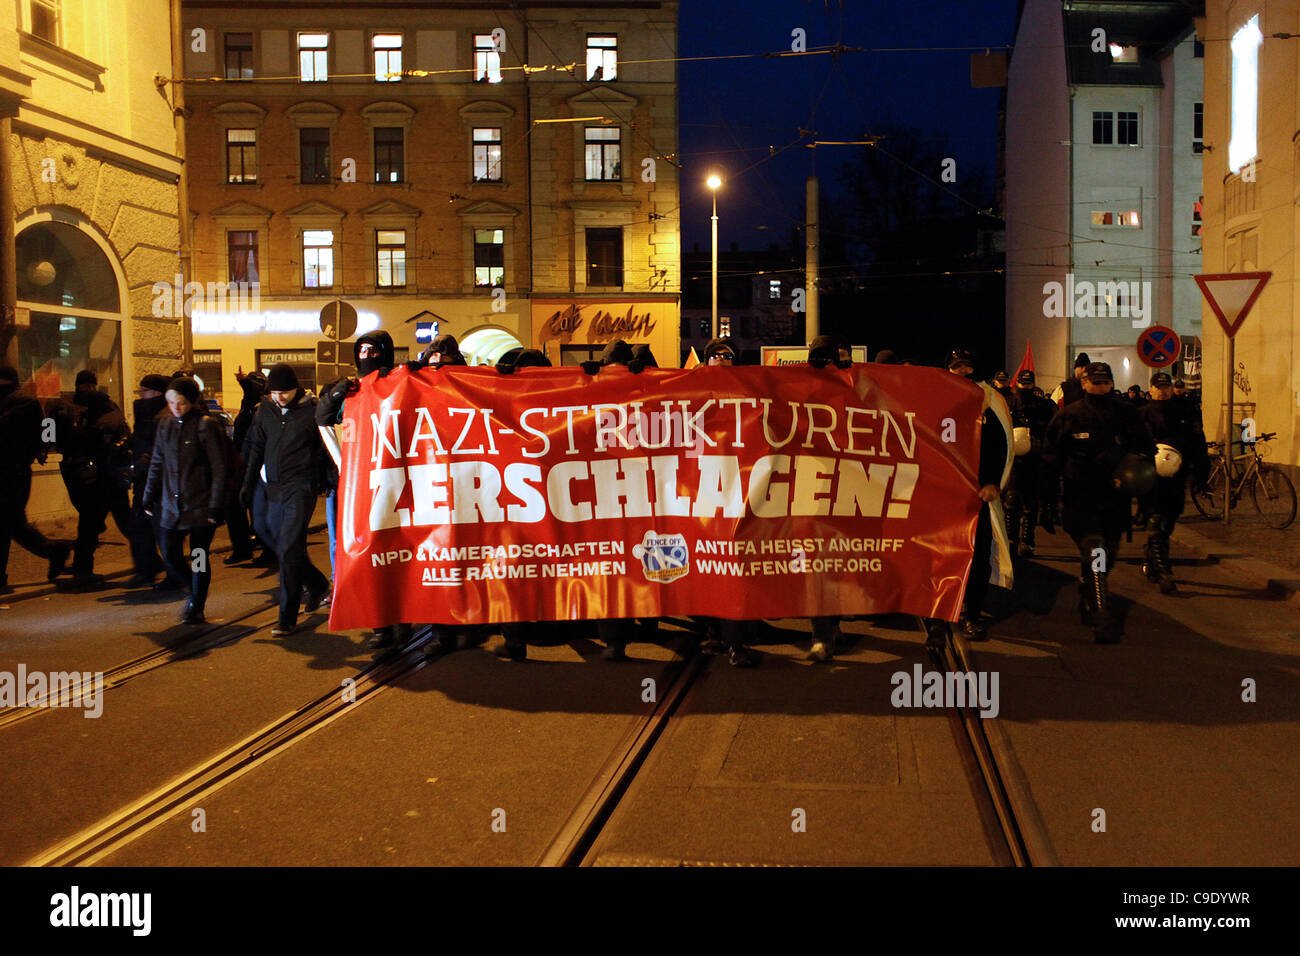 I partecipanti anti-fascisti hanno una bandiera in tedesco "strutture naziste mash" durante un raduno contro l'estremismo di destra e il centro di partito Neo nazista NPD a Lipsia Germania Foto Stock